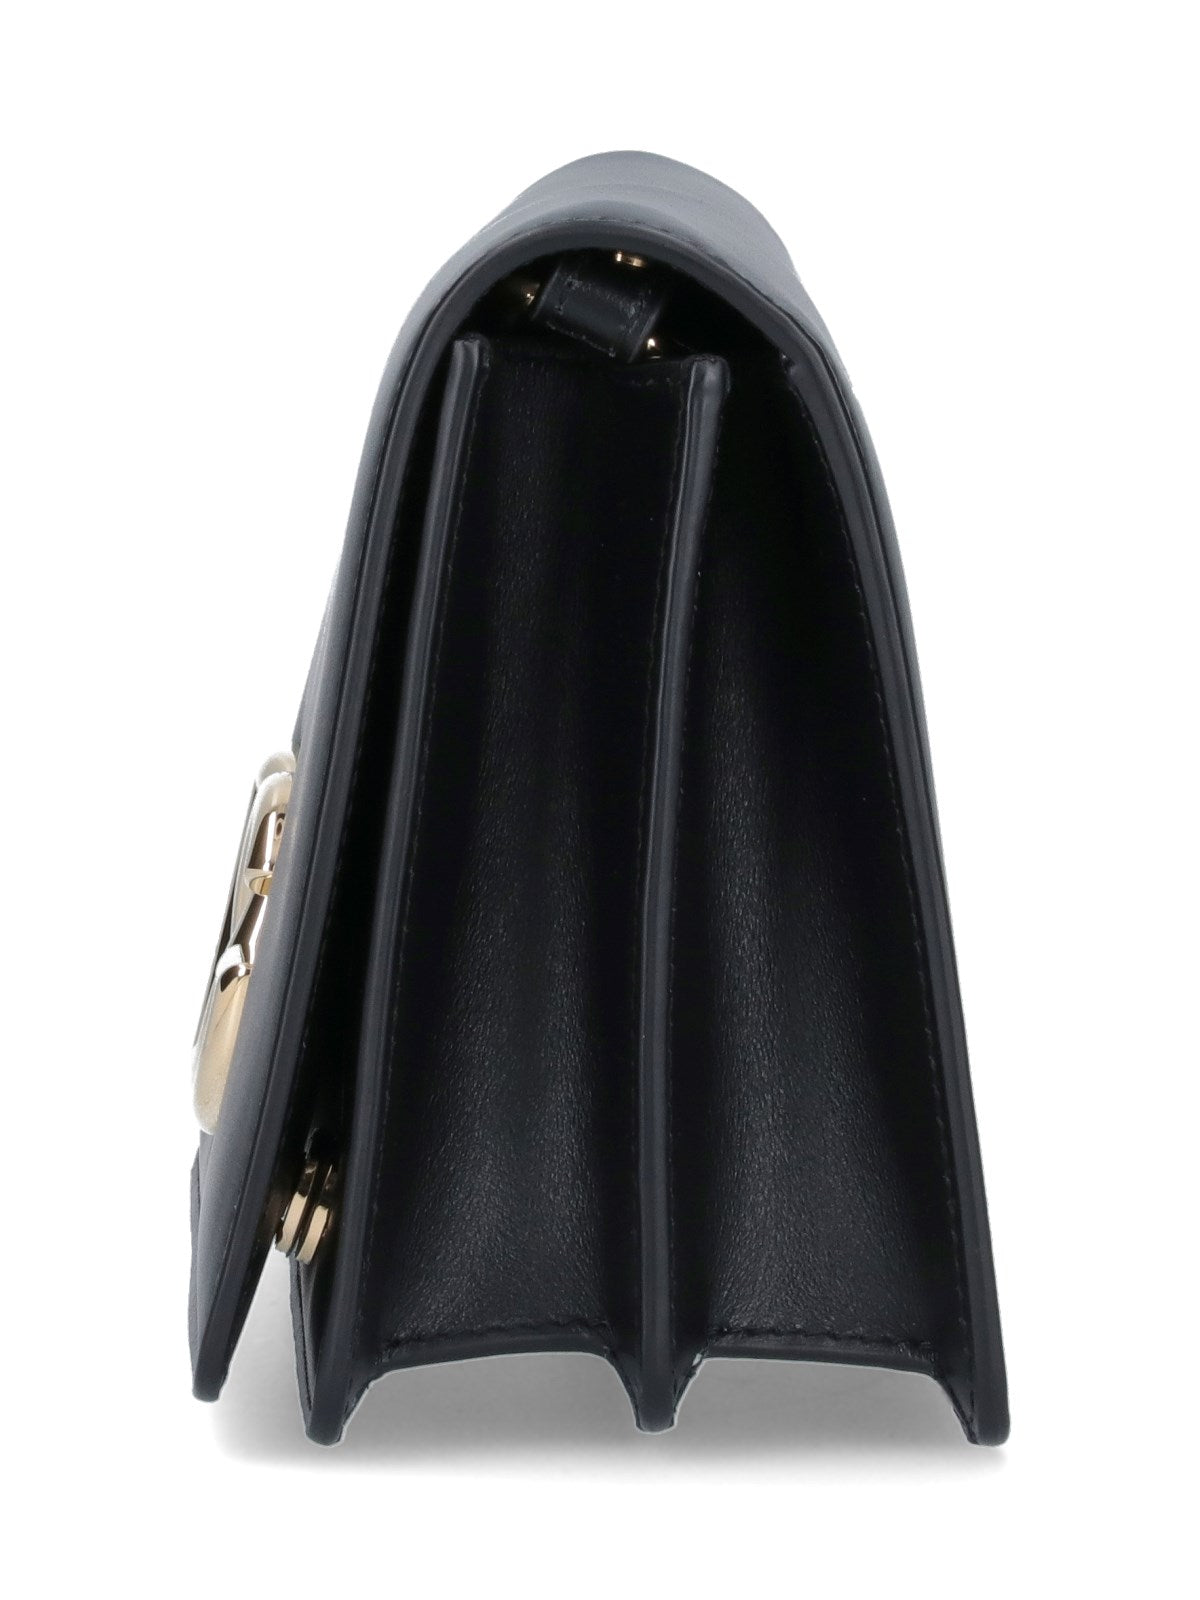 Dolce & Gabbana Borsa tracolla logo-borse a tracolla-Dolce & Gabbana-Borsa tracolla logo Dolce & Gabbana, in pelle nera, tracolla regolabile, fibbia logo dorato fronte, chiusura bottoni magnetici, uno slot carte interno, due scomparti interni separati-Dresso